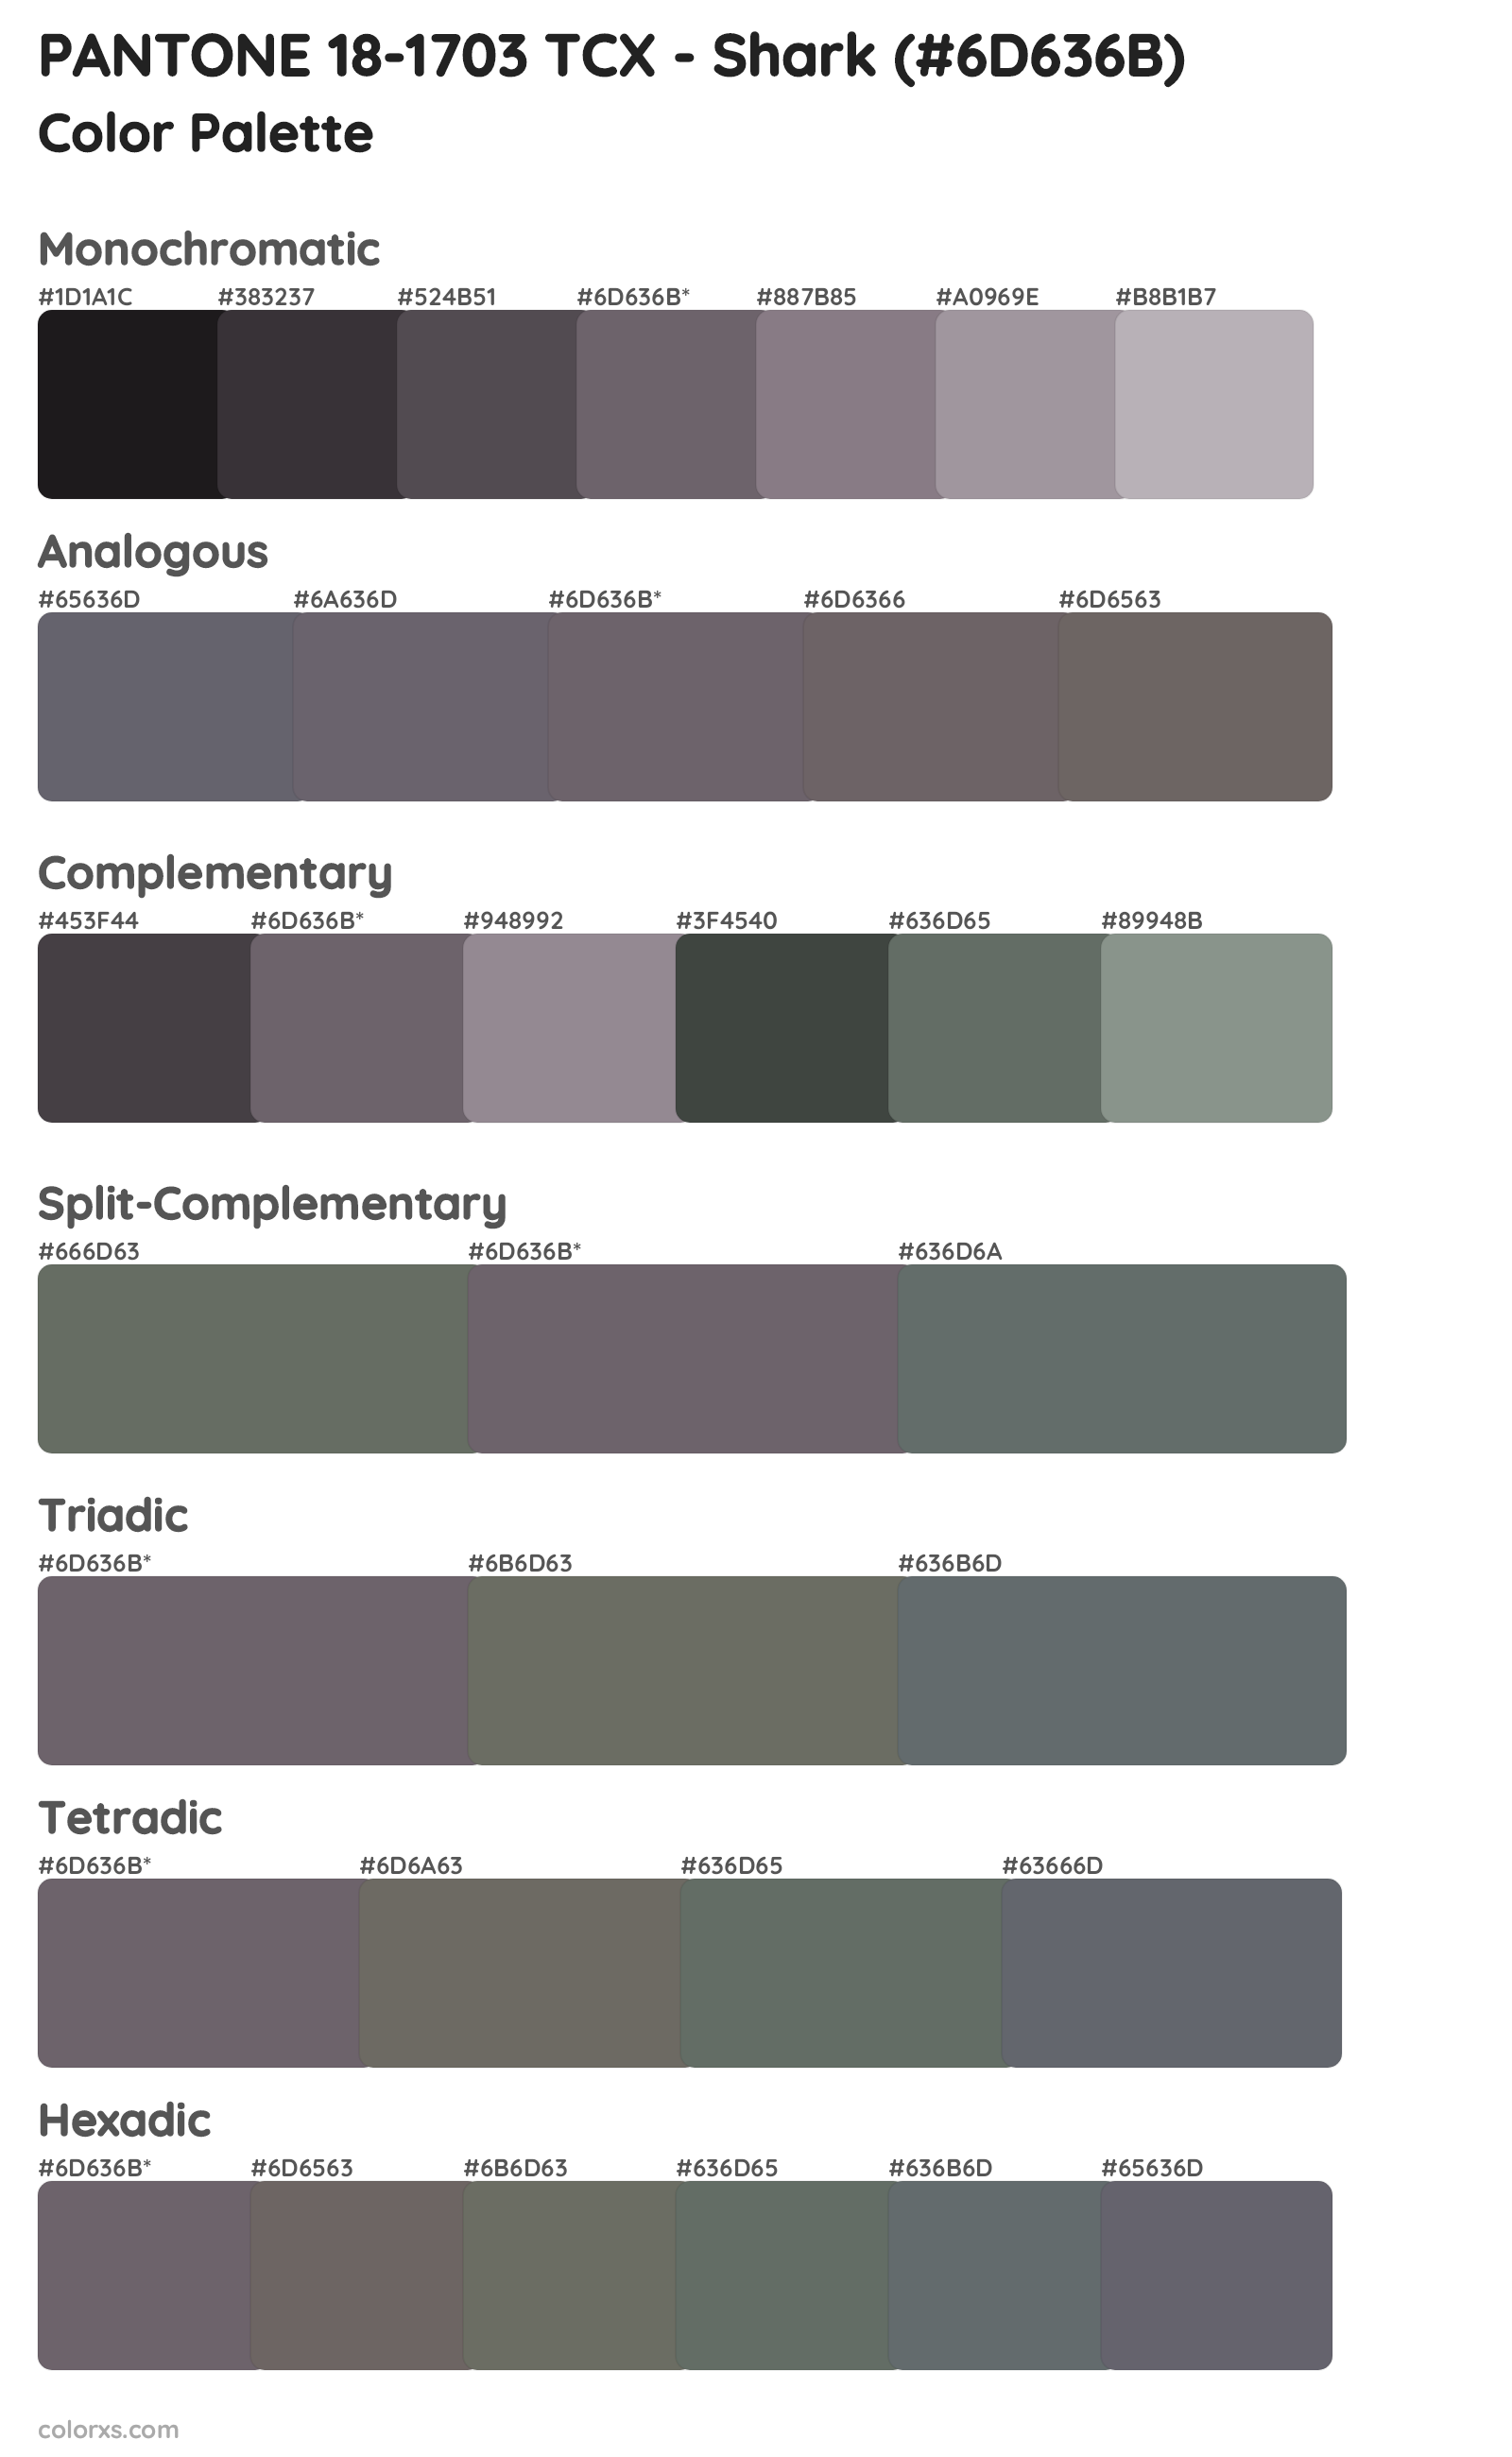 PANTONE 18-1703 TCX - Shark Color Scheme Palettes